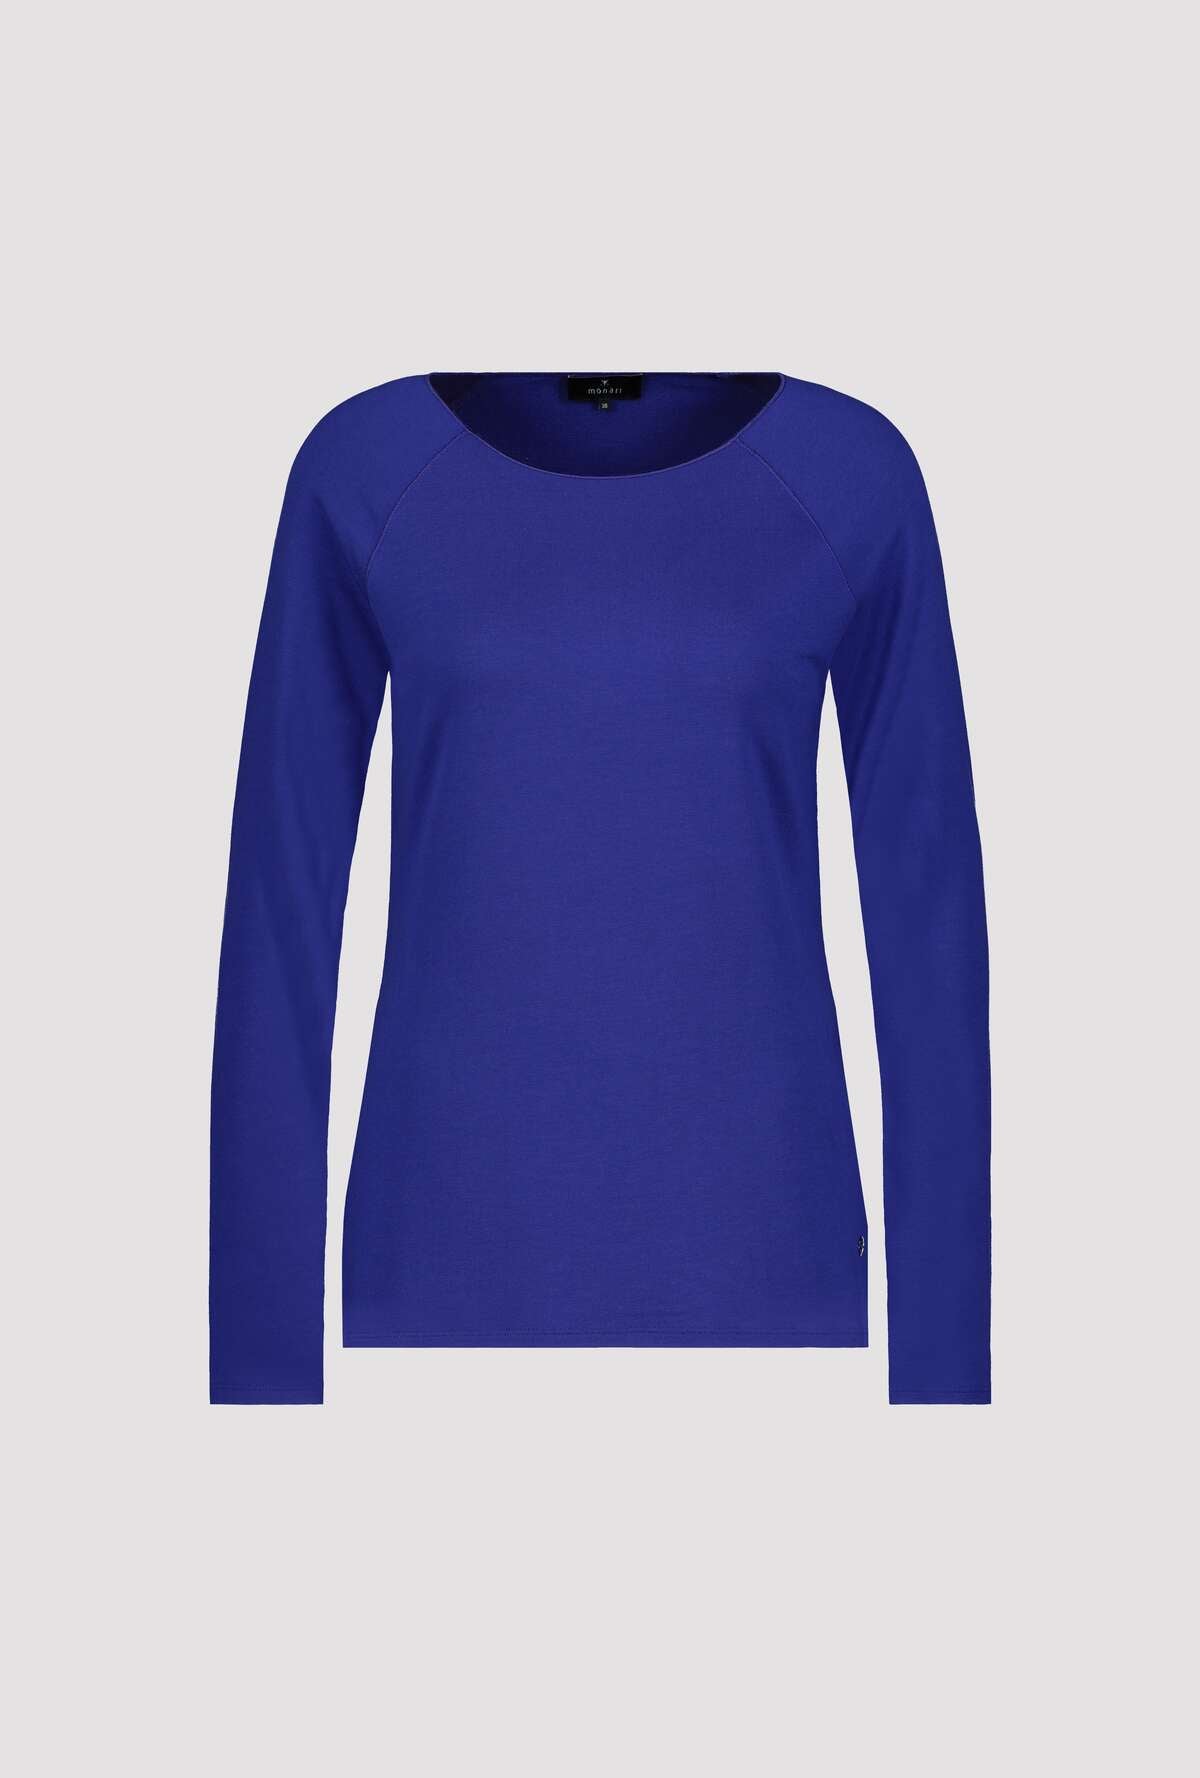 Shop Basic T-Shirt | Royal Blue - Monari